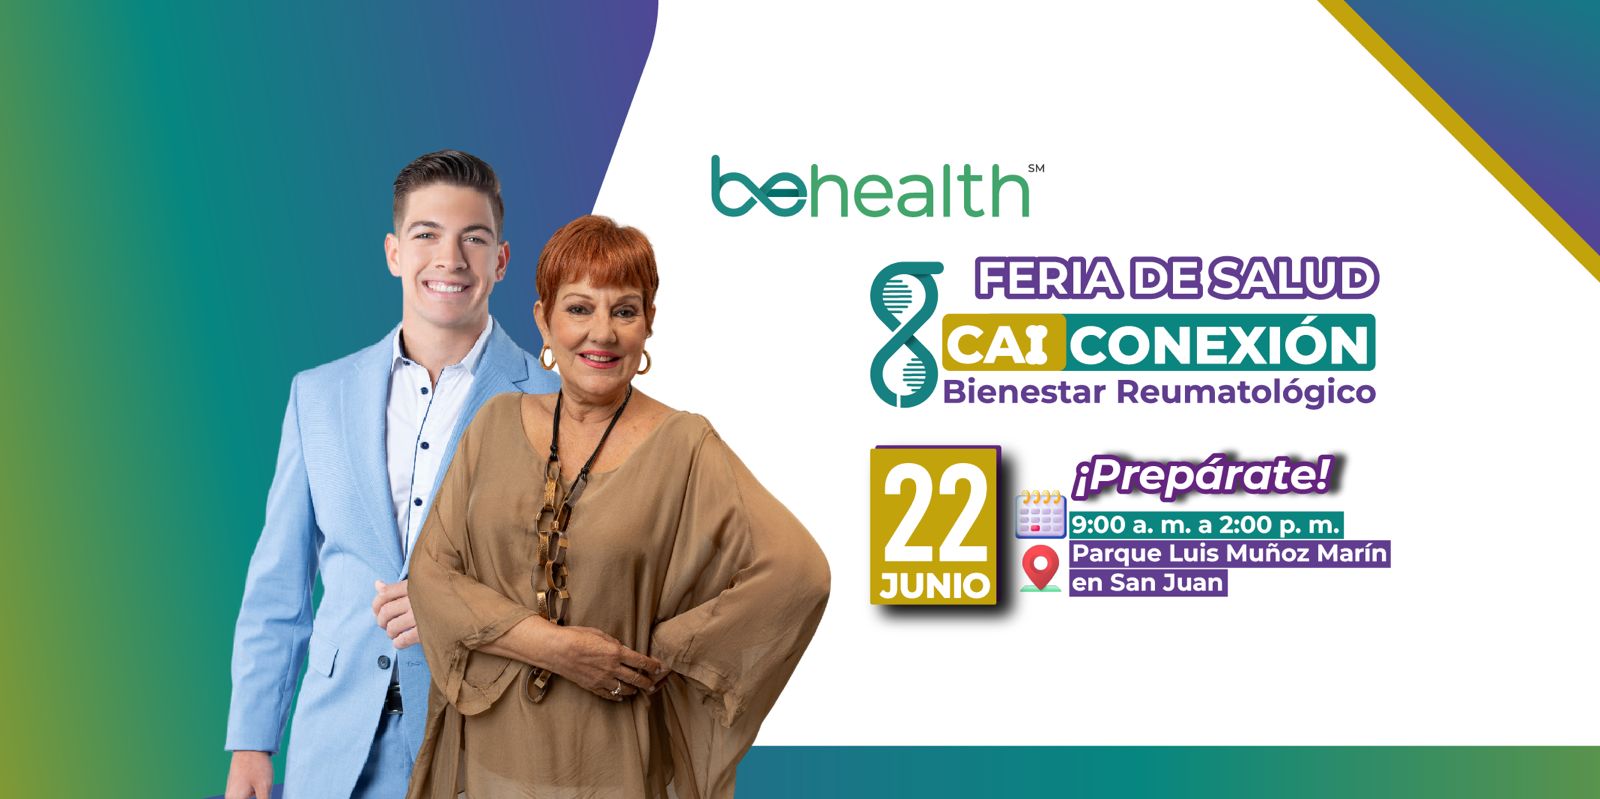 BeHealth y la Asociación Puertorriqueña de Reumatología se unen para celebrar la Feria de Salud Reumatológica en conmemoración de los 25 años de la asociación.